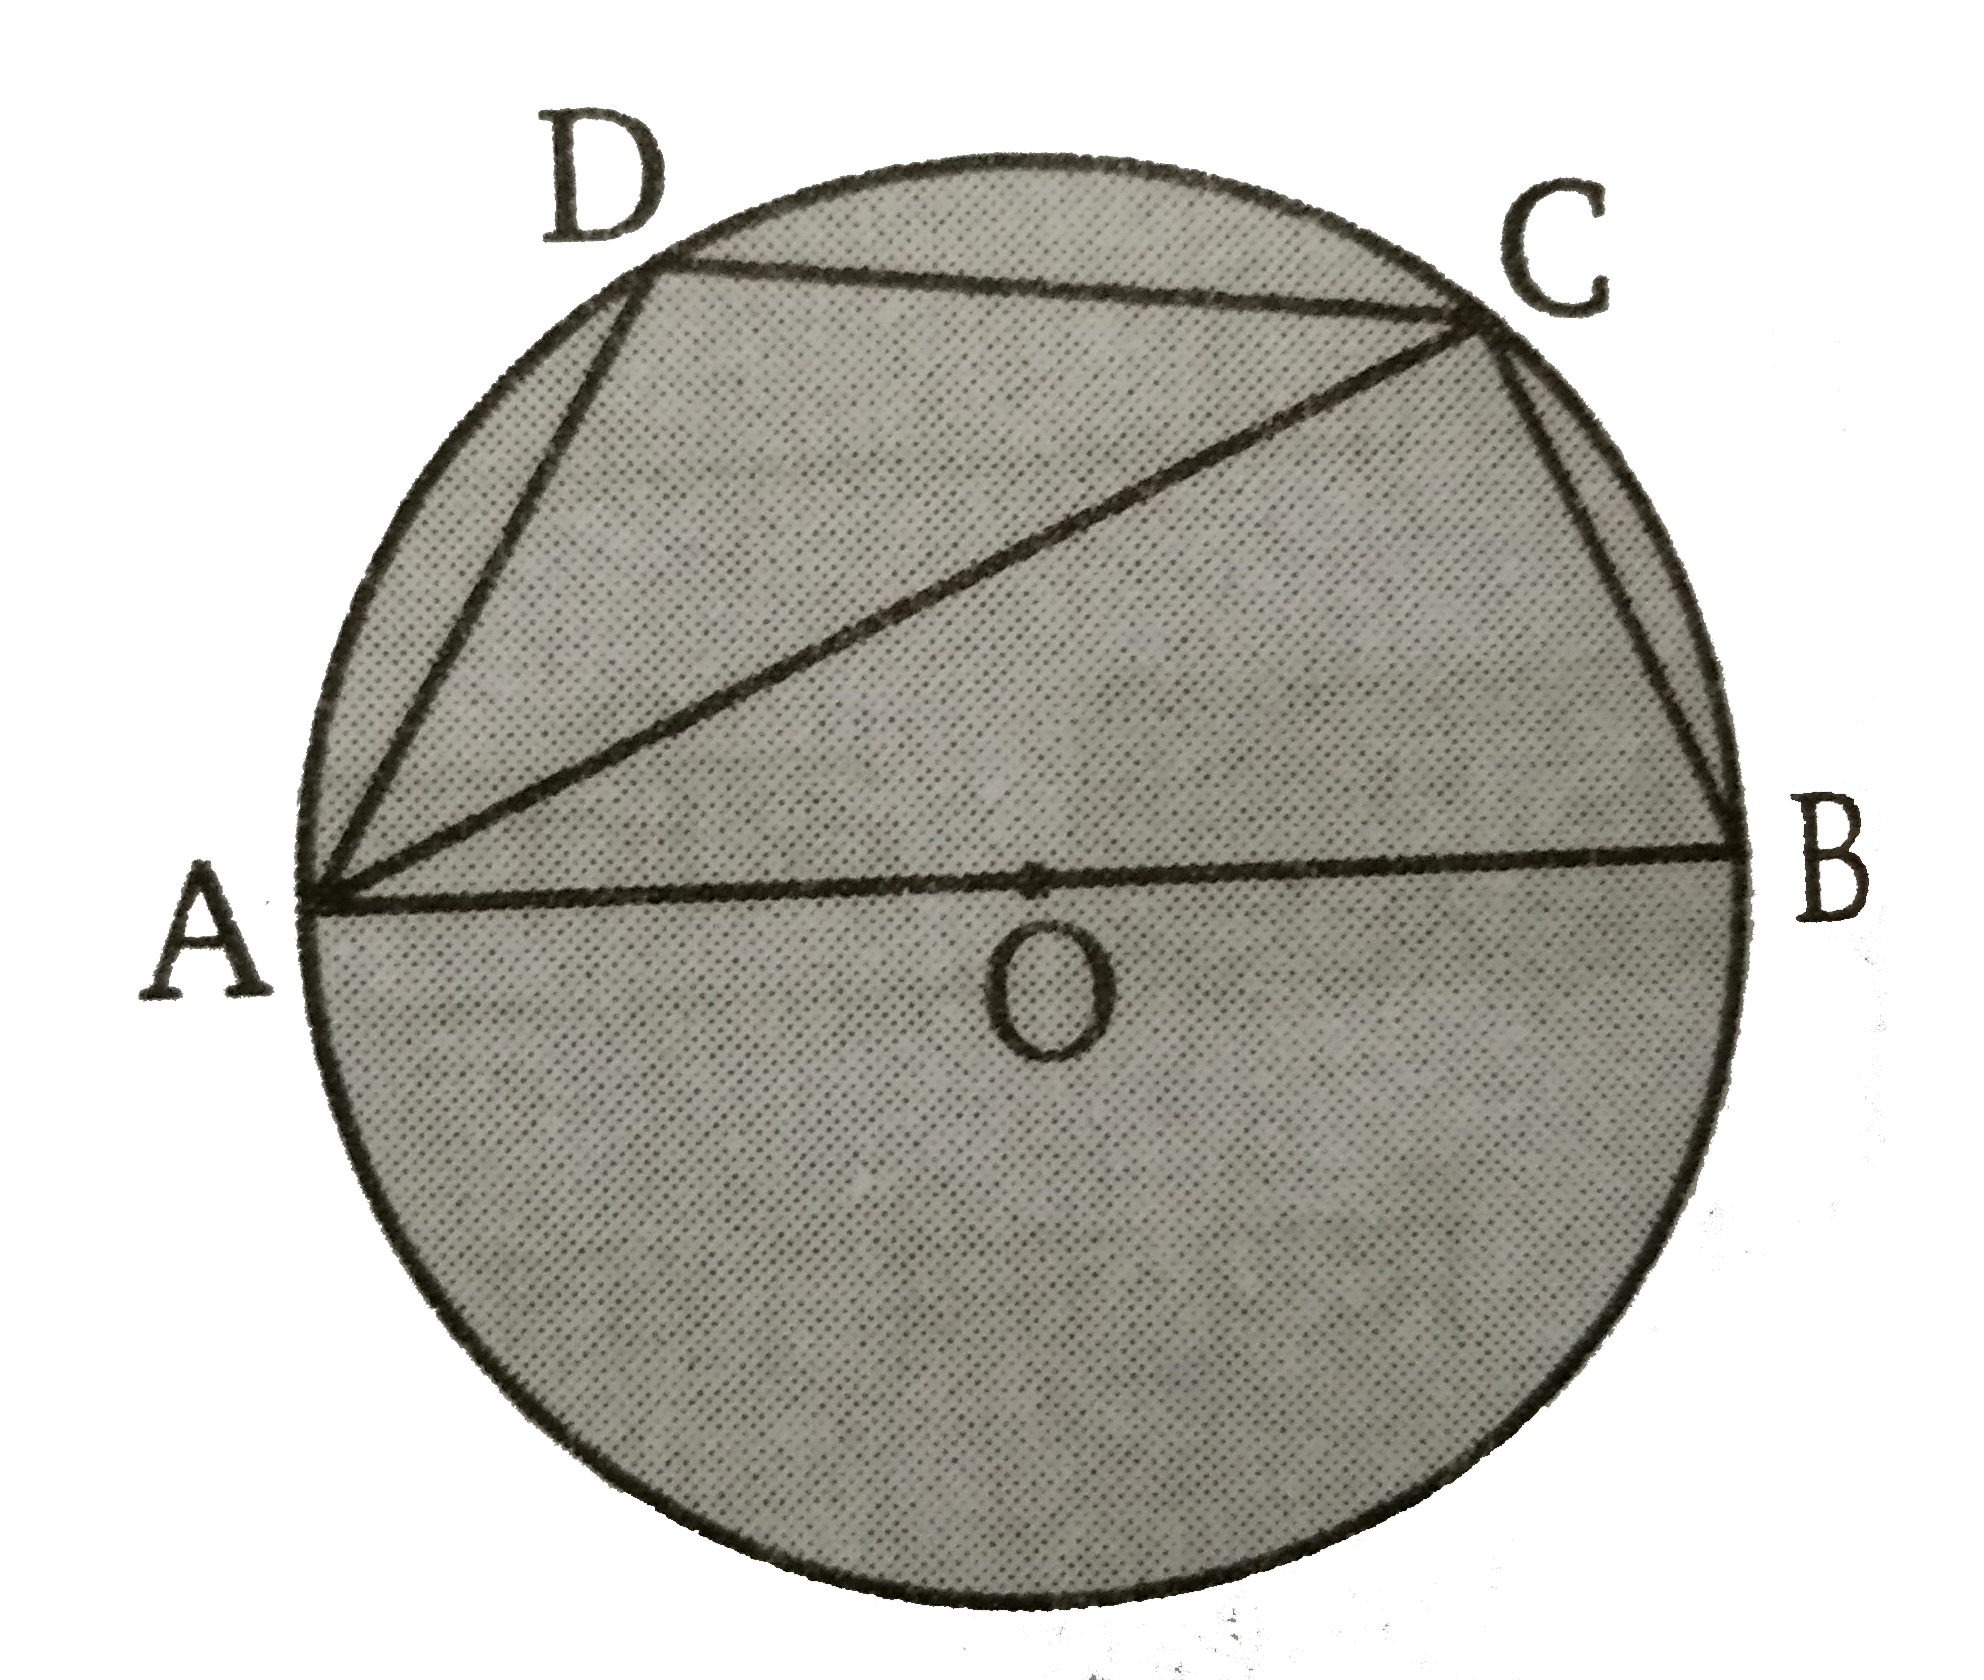 दिये गए चित्र में AOB, O  केन्द्र वाले वृत्त का व्यास है तथा angleADC  = 125^(@)  तब angle BAC  का मान ज्ञात कीजिए ।